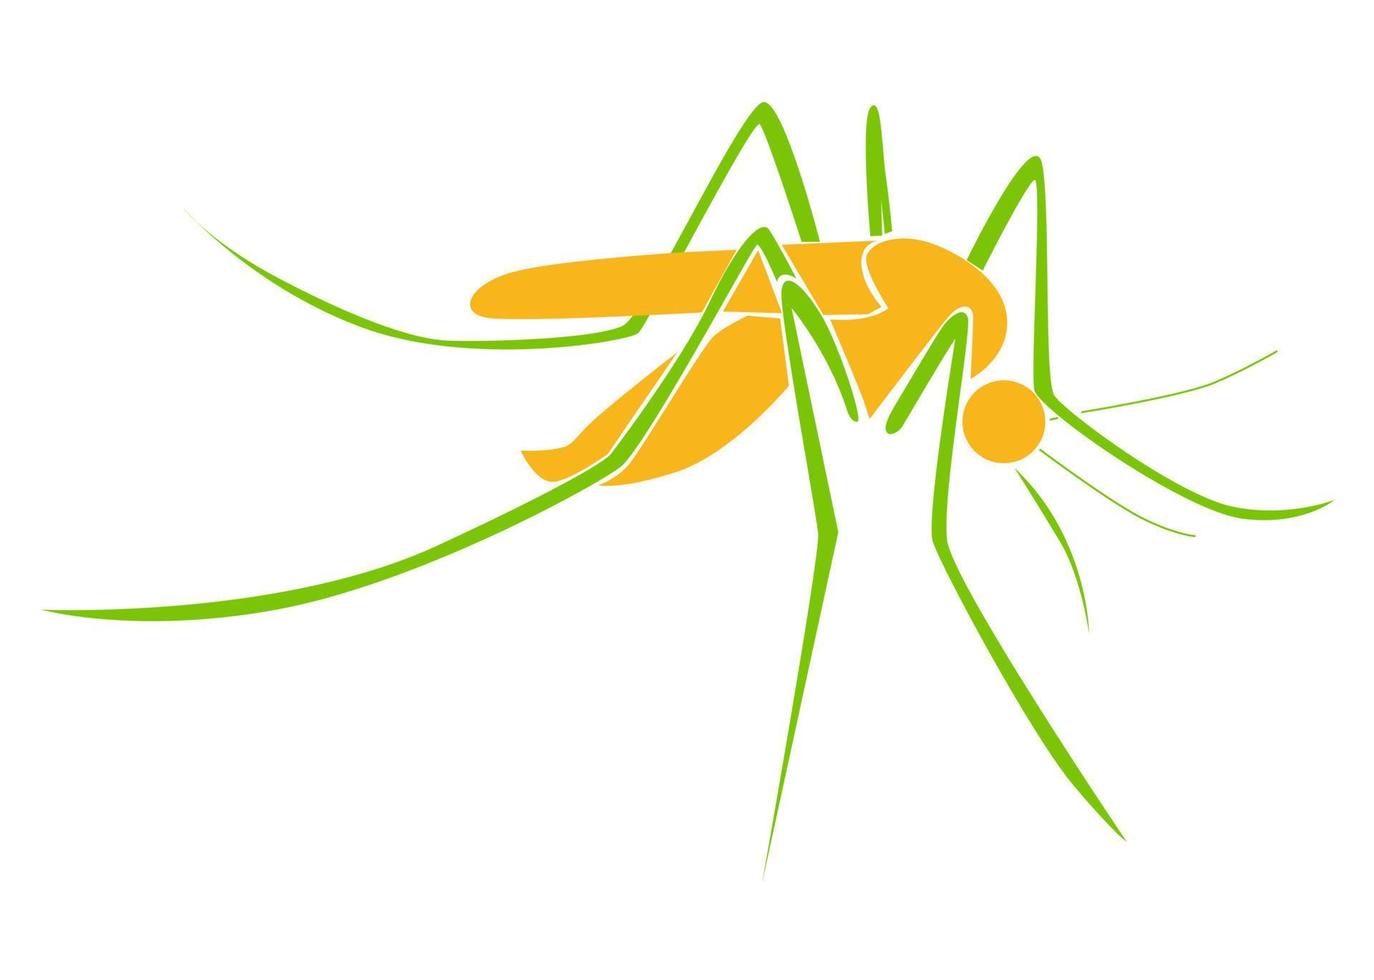 disegno vettoriale, icona o forma del simbolo di una zanzara vettore